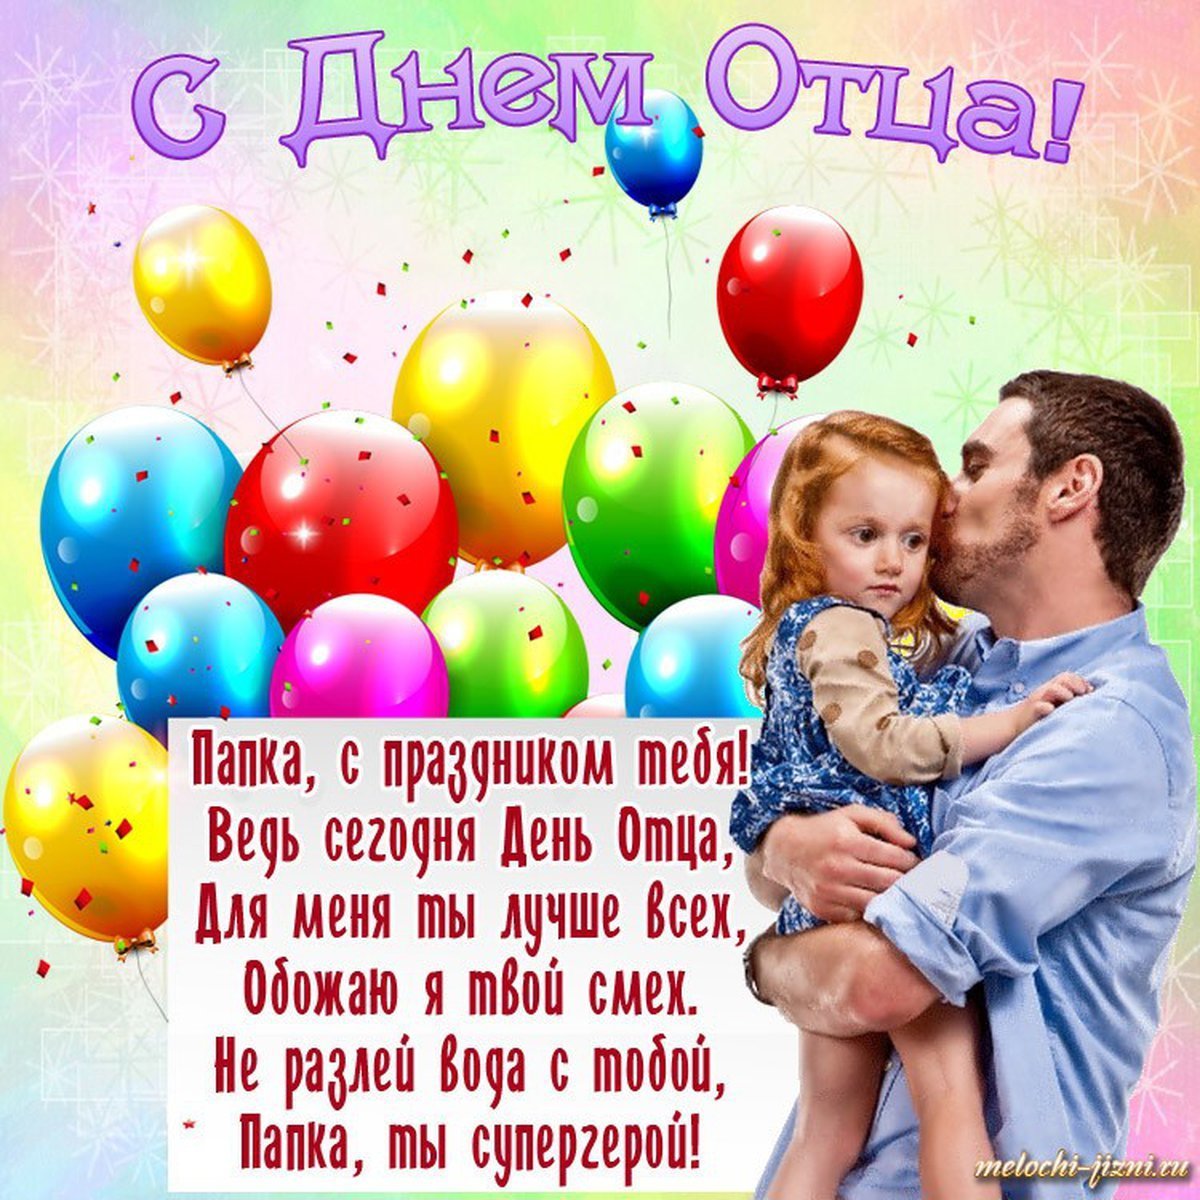 День отца в России 16 октября: новые красивые открытки и поздравления в стихах